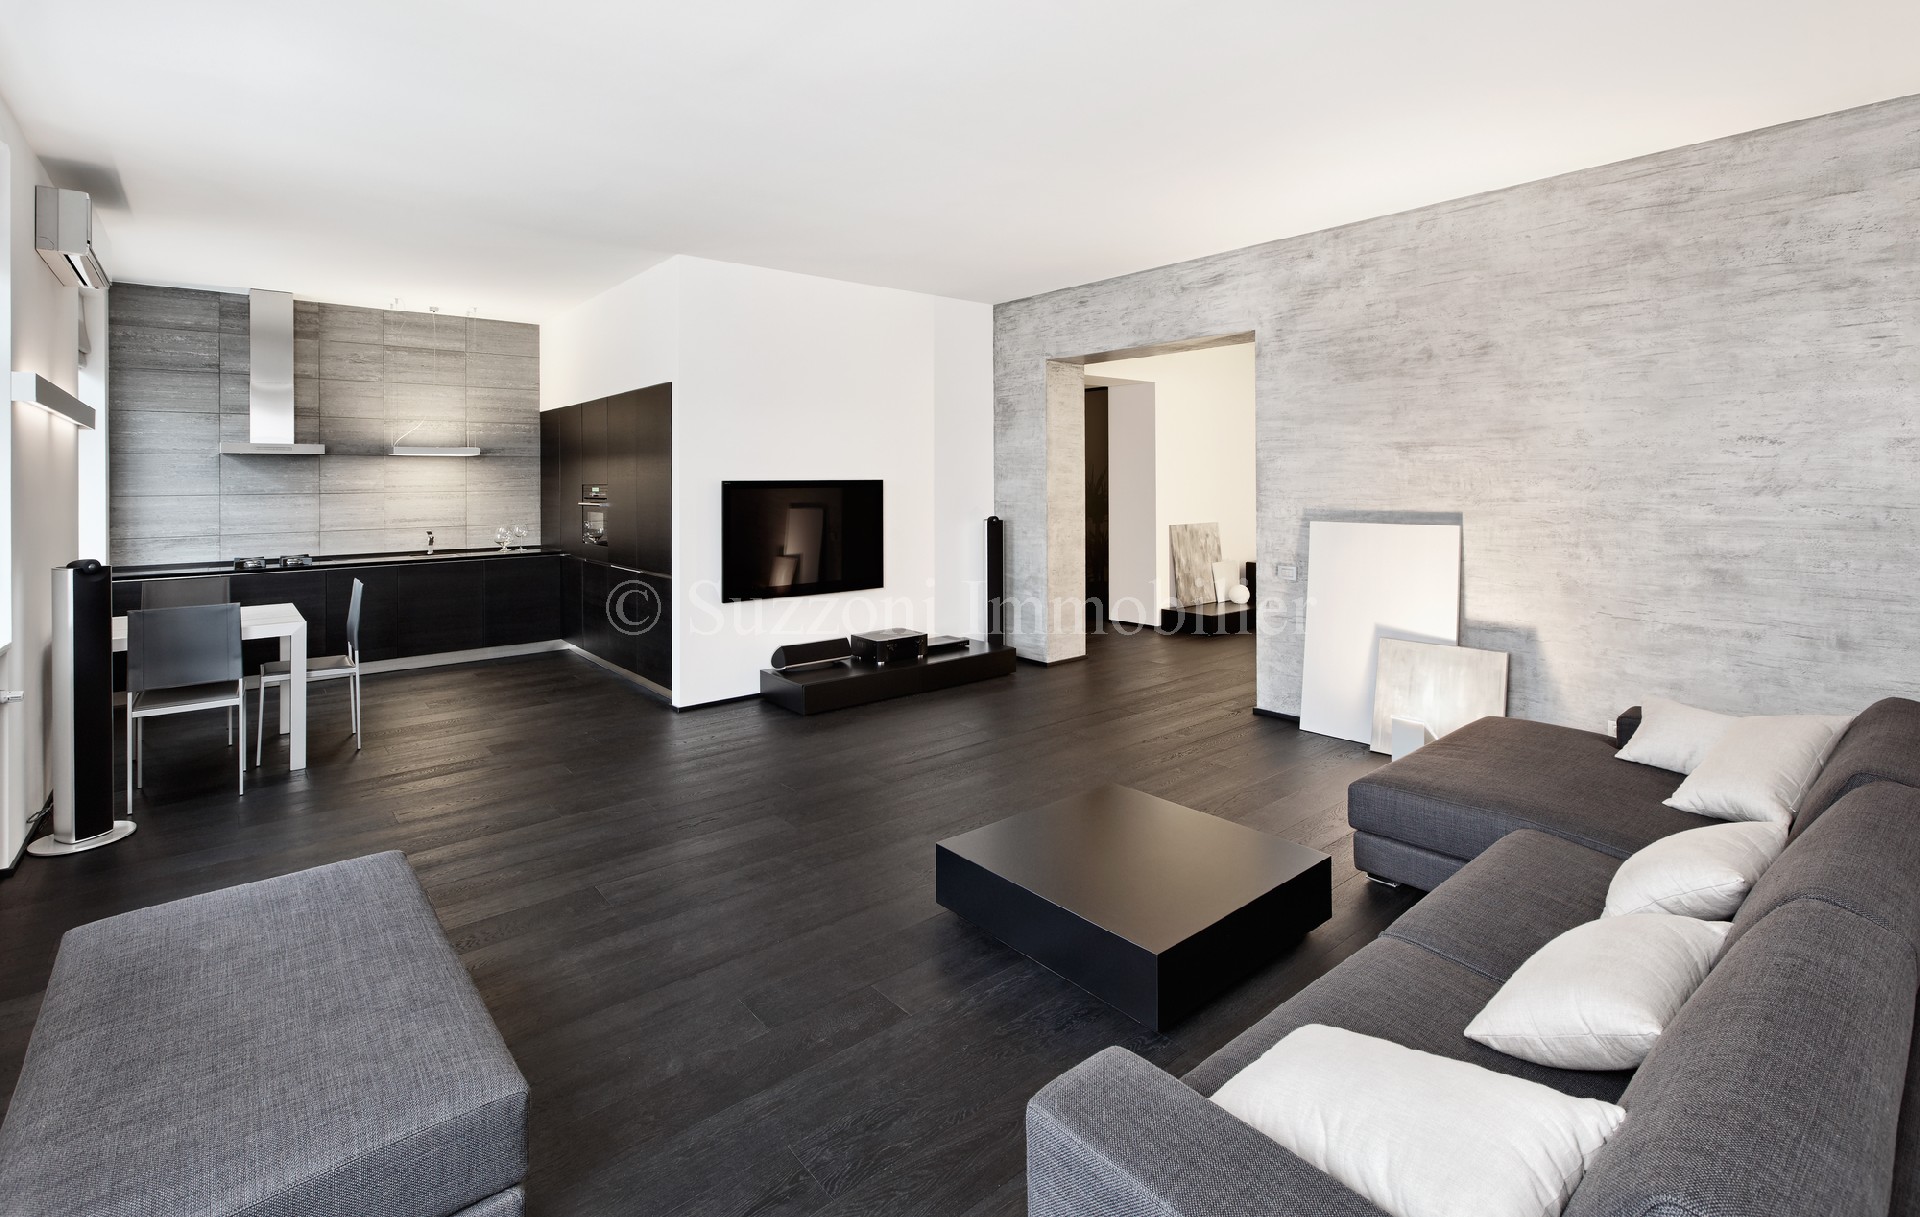 Vente appartement - LA VALETTE LA COUPIANE 64 m², 3 pièces